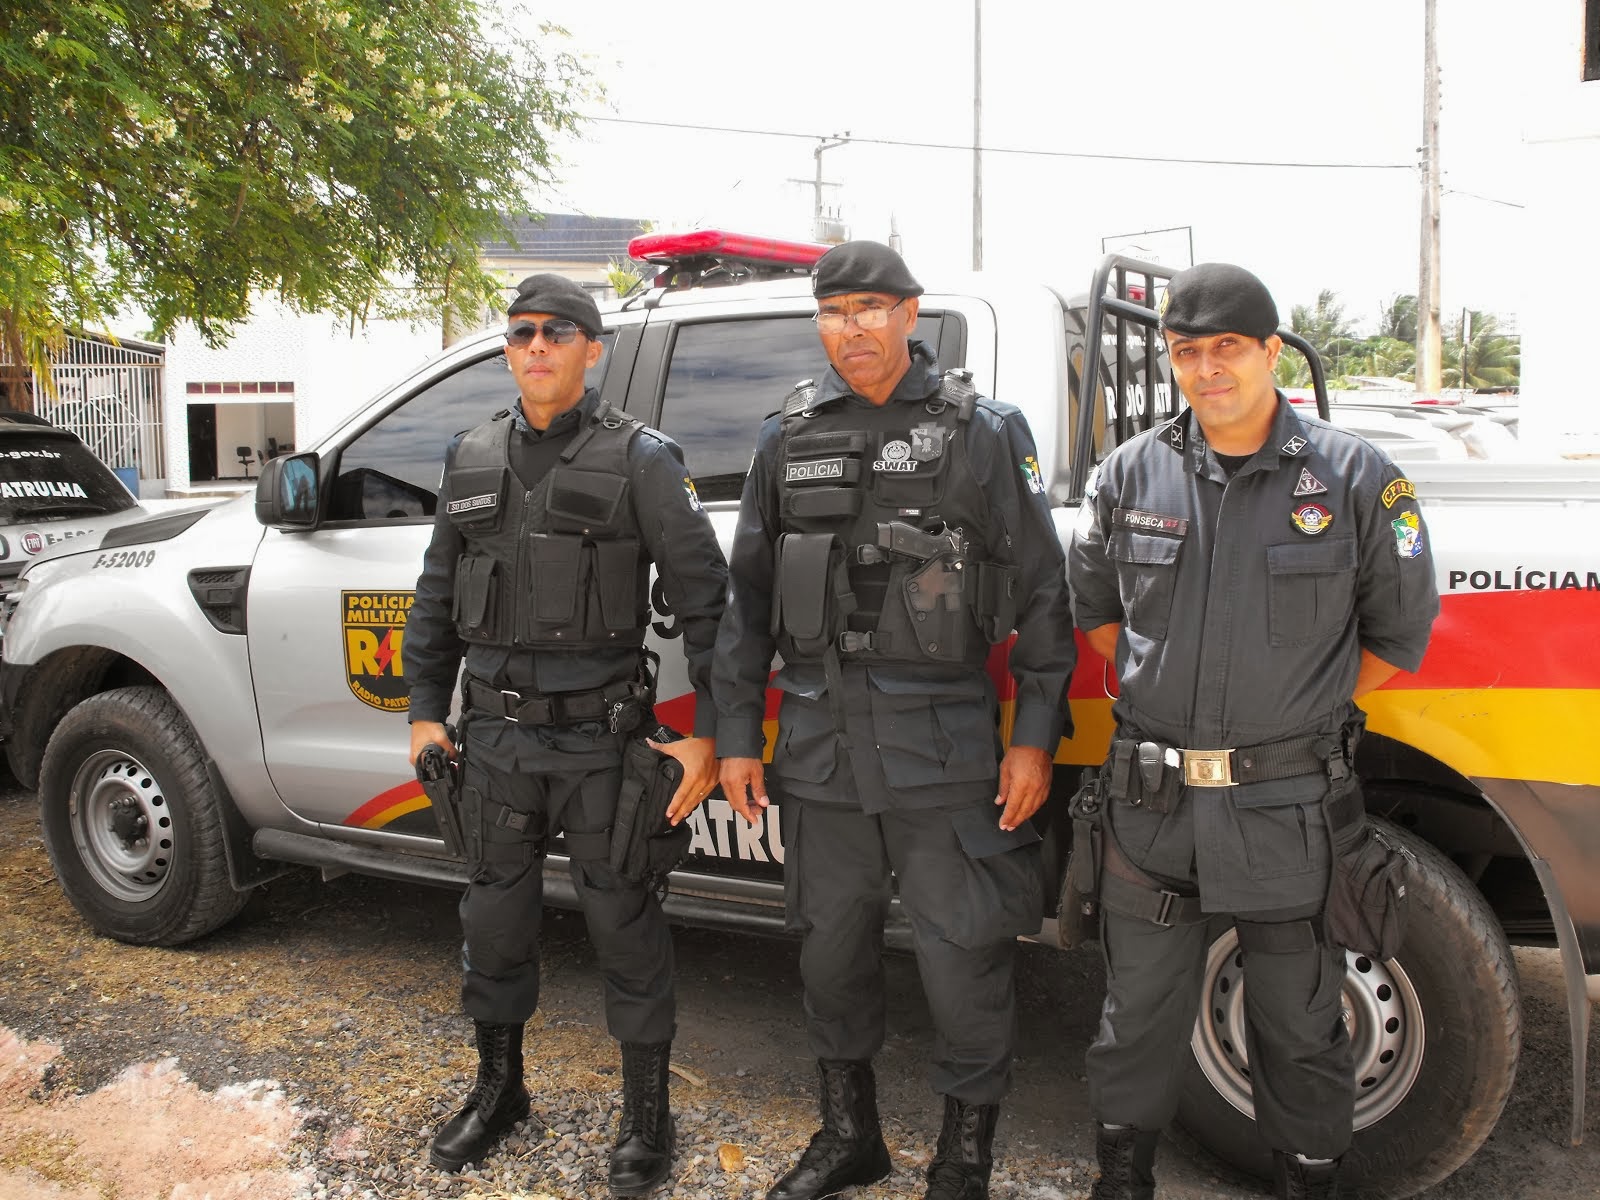 POLICIAIS MILITARES DA RADIOPATRULHA